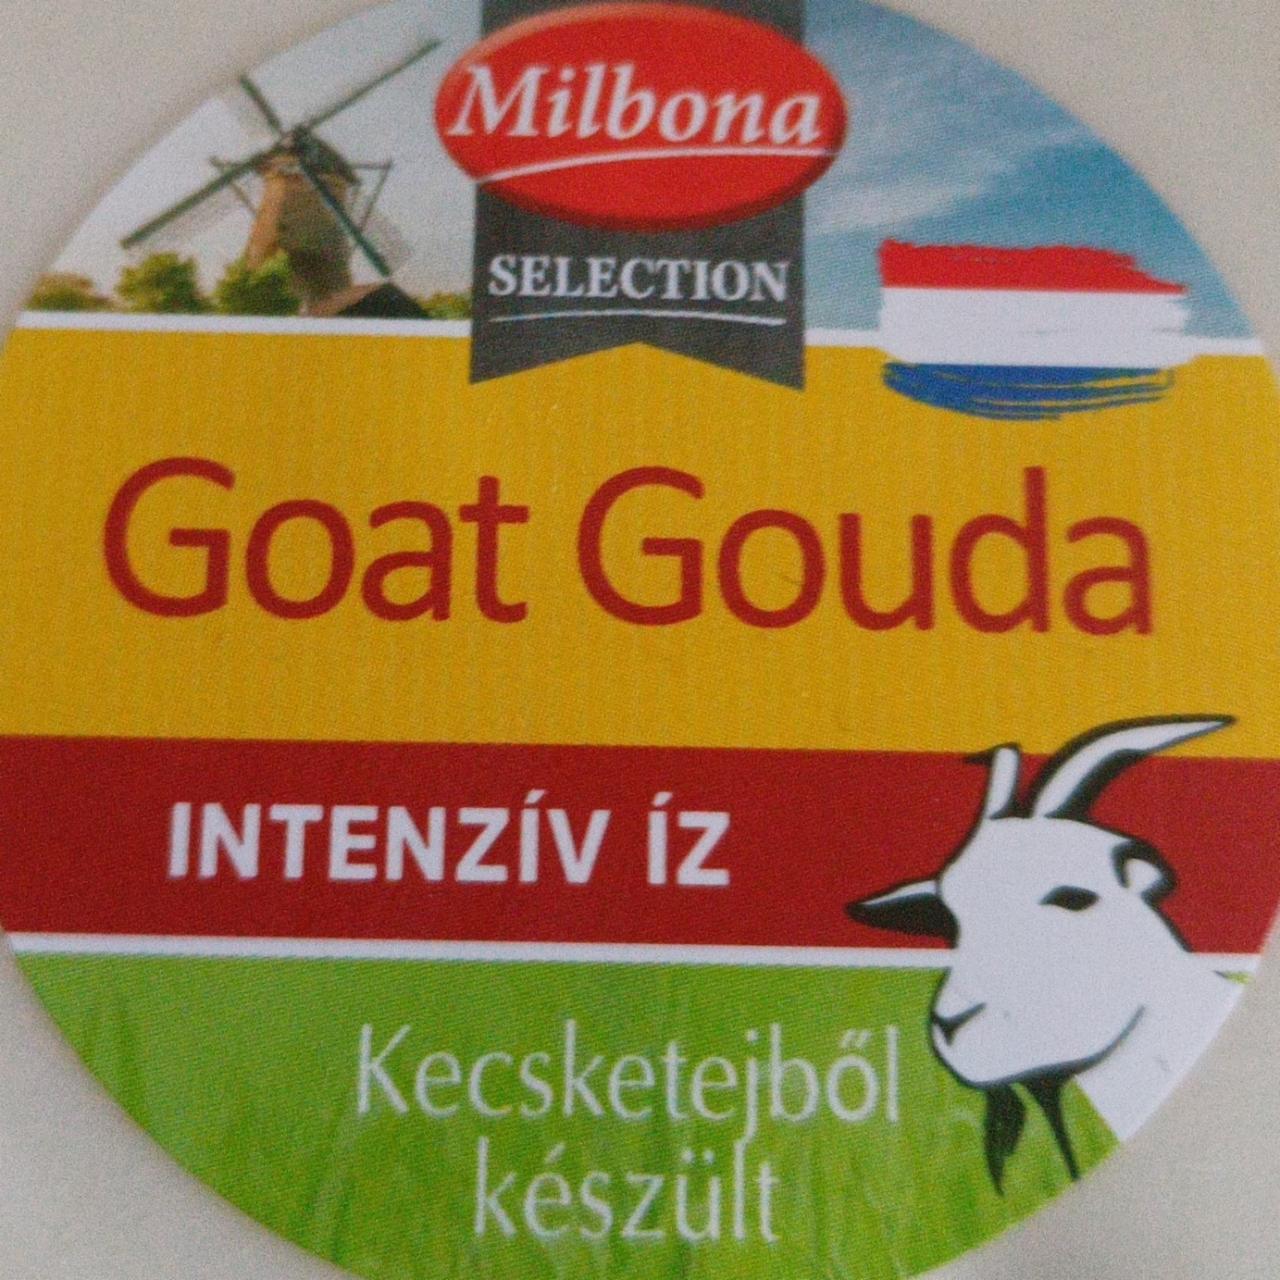 Képek - Goat gouda intenzív íz kecskesajt Milbona